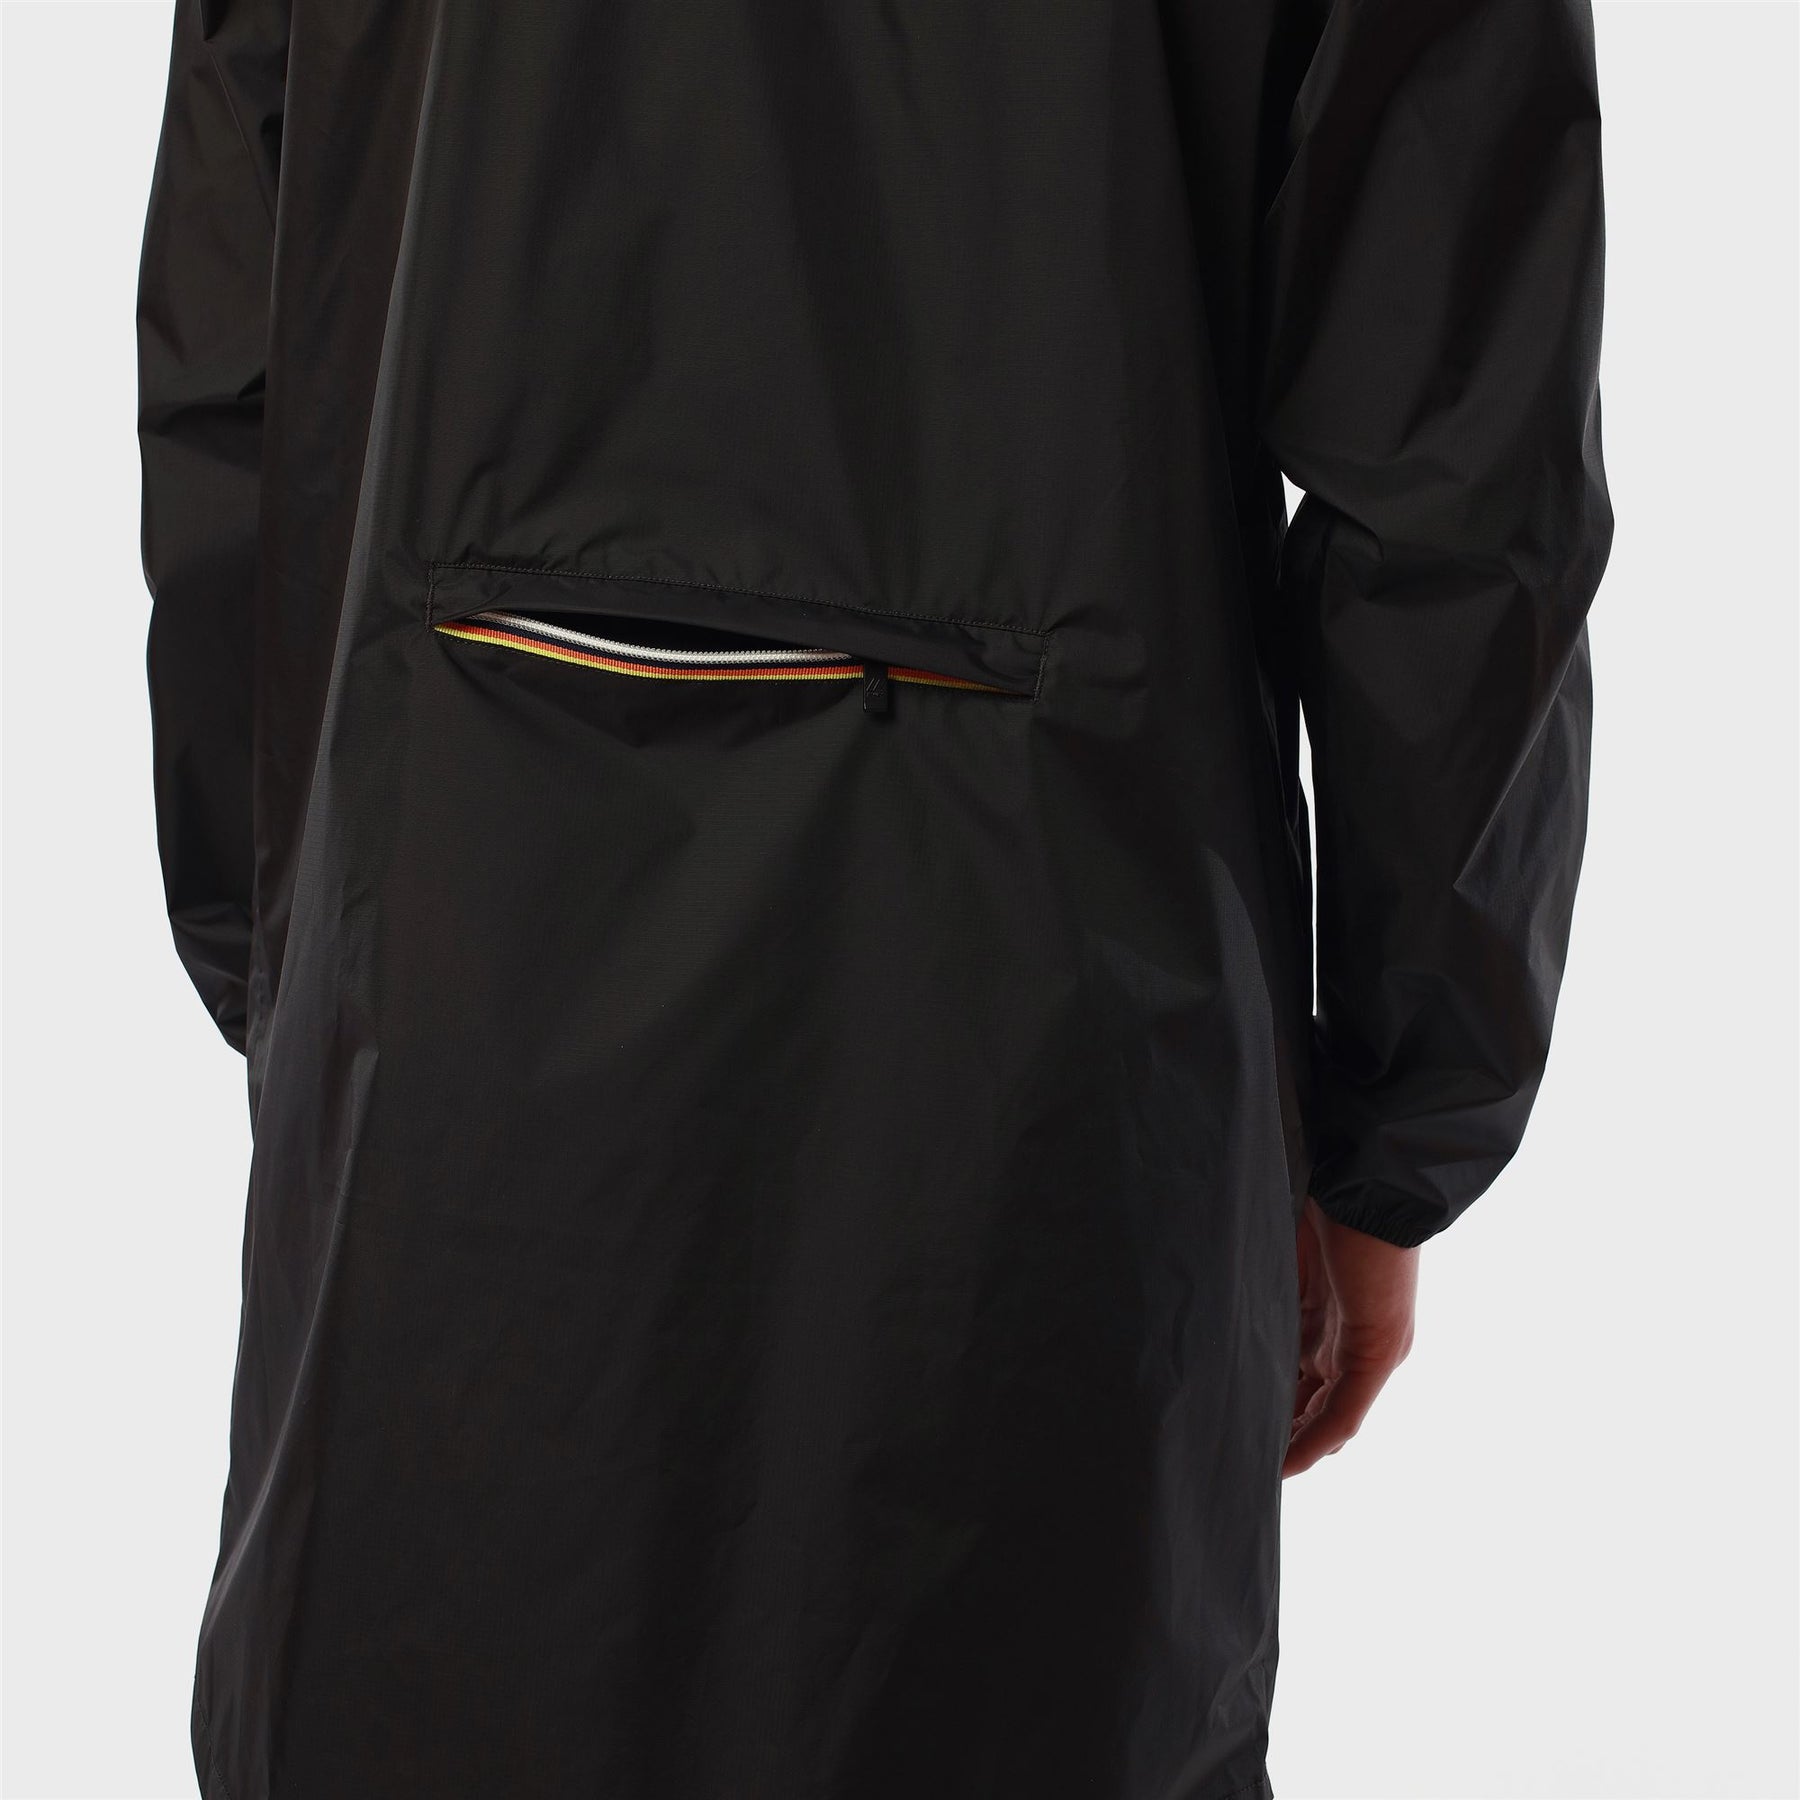 Eiffel - Unisex Waterproof Packable Long Rain Jacket in Black